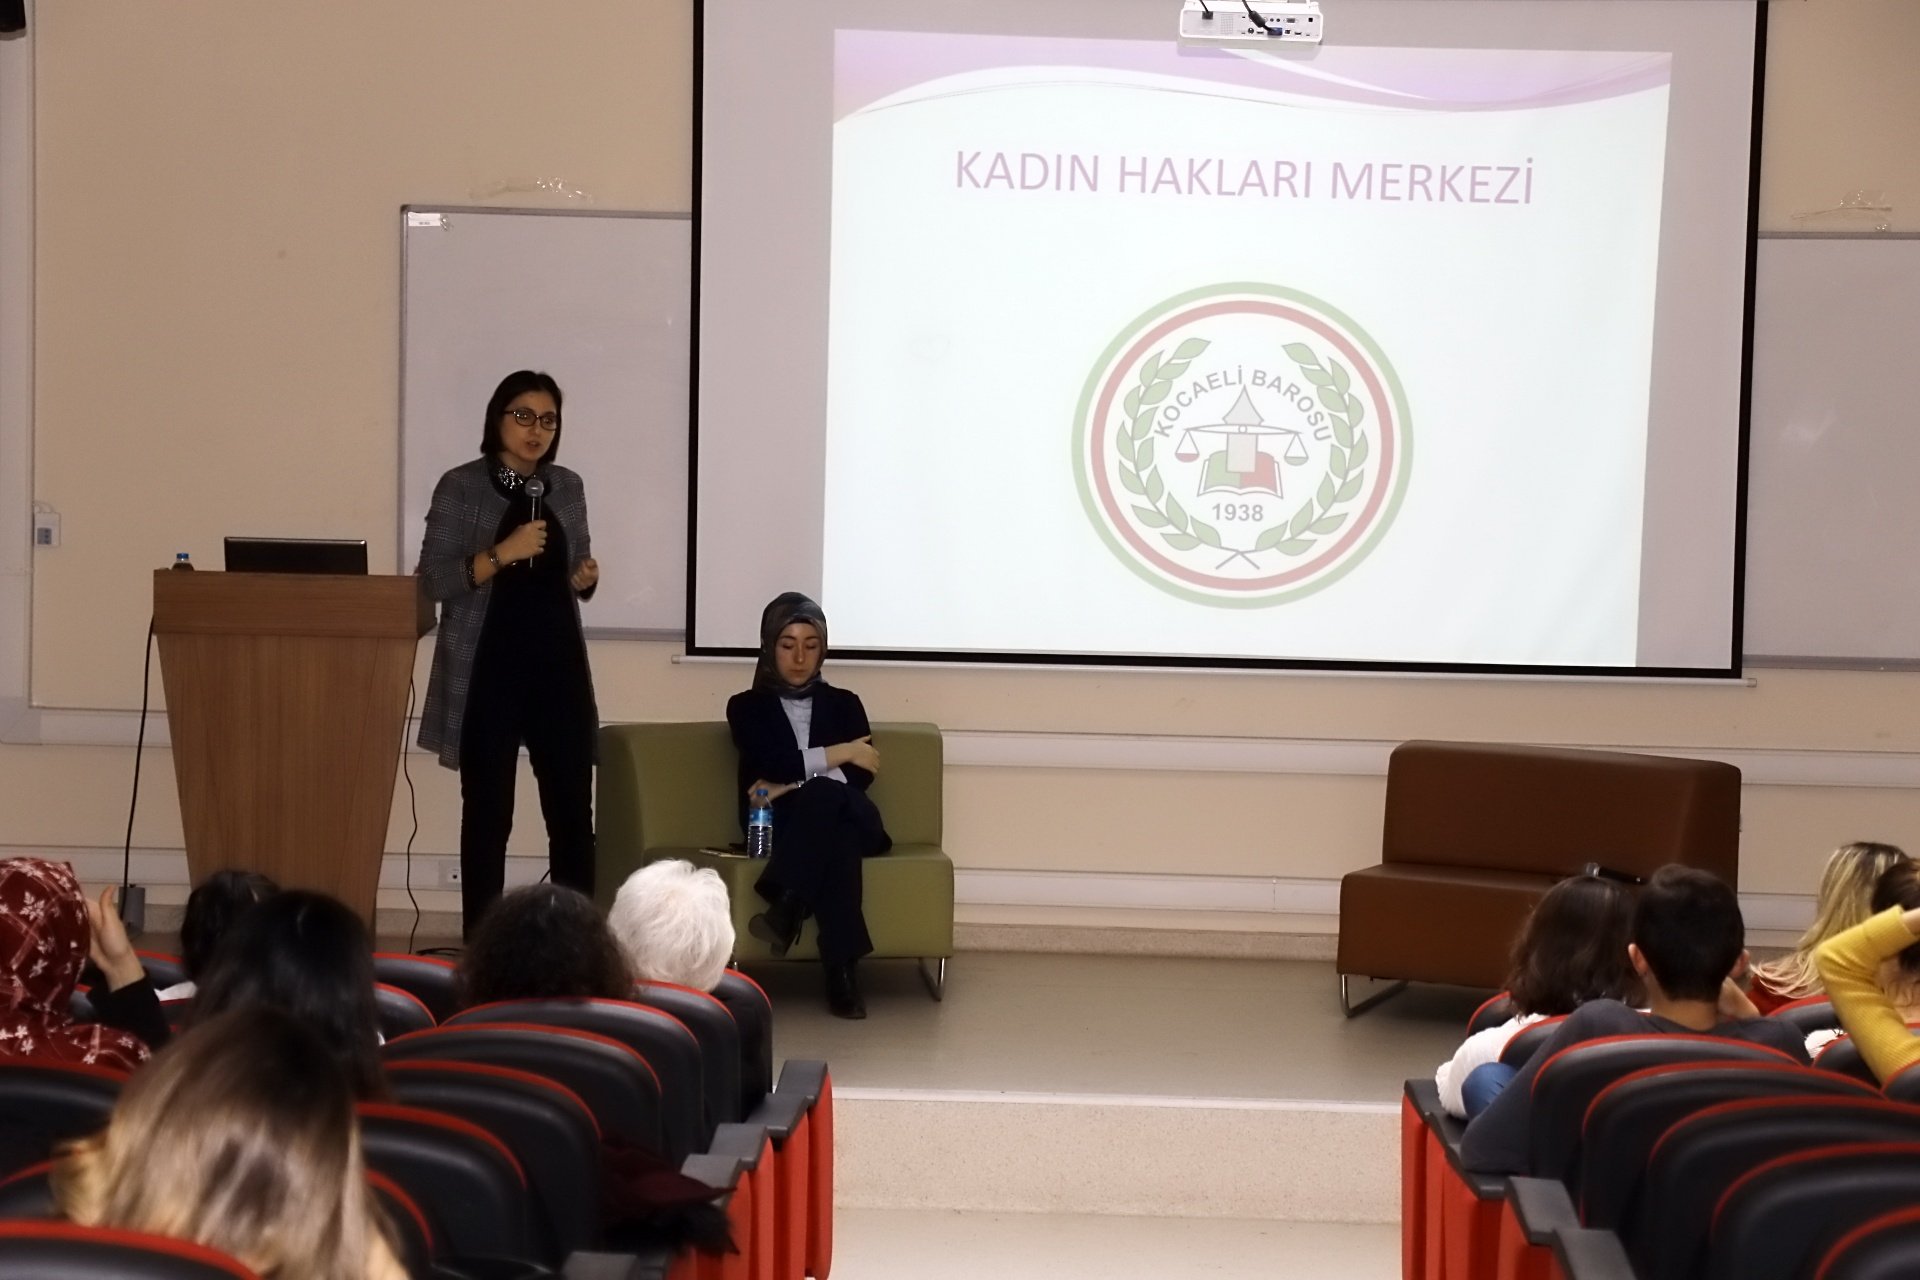 GTÜ'de 'Kadına şiddete son'semineri düzenlendi